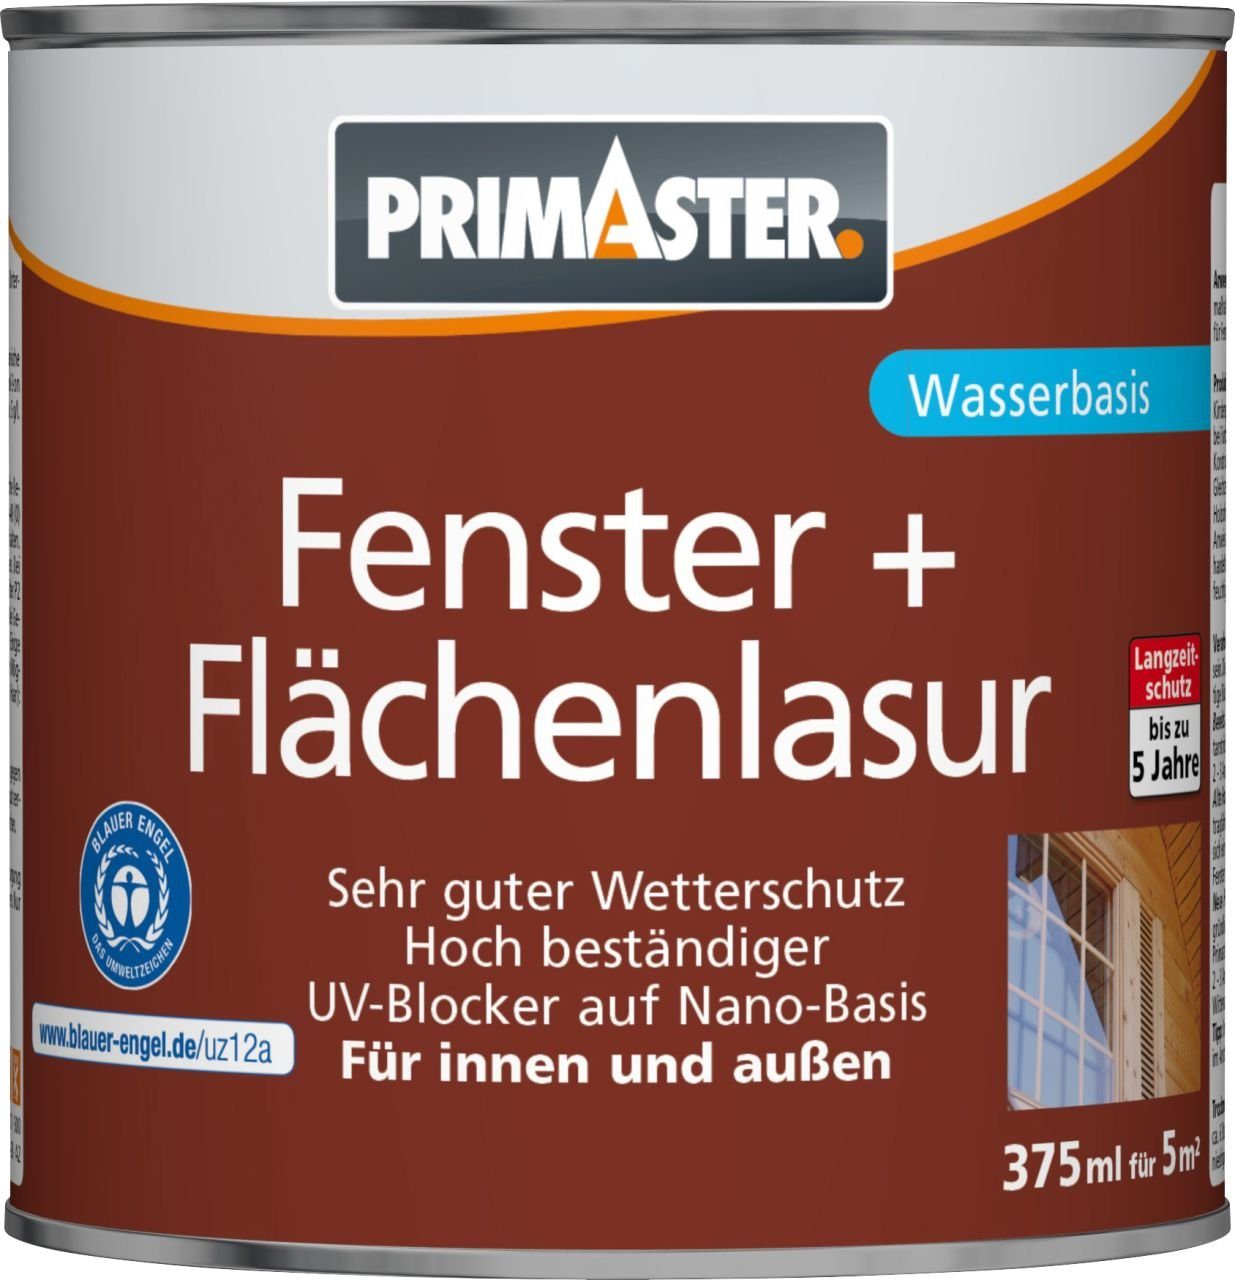 Flächenlasur und ml Lasur farblos Primaster Fenster Primaster 375